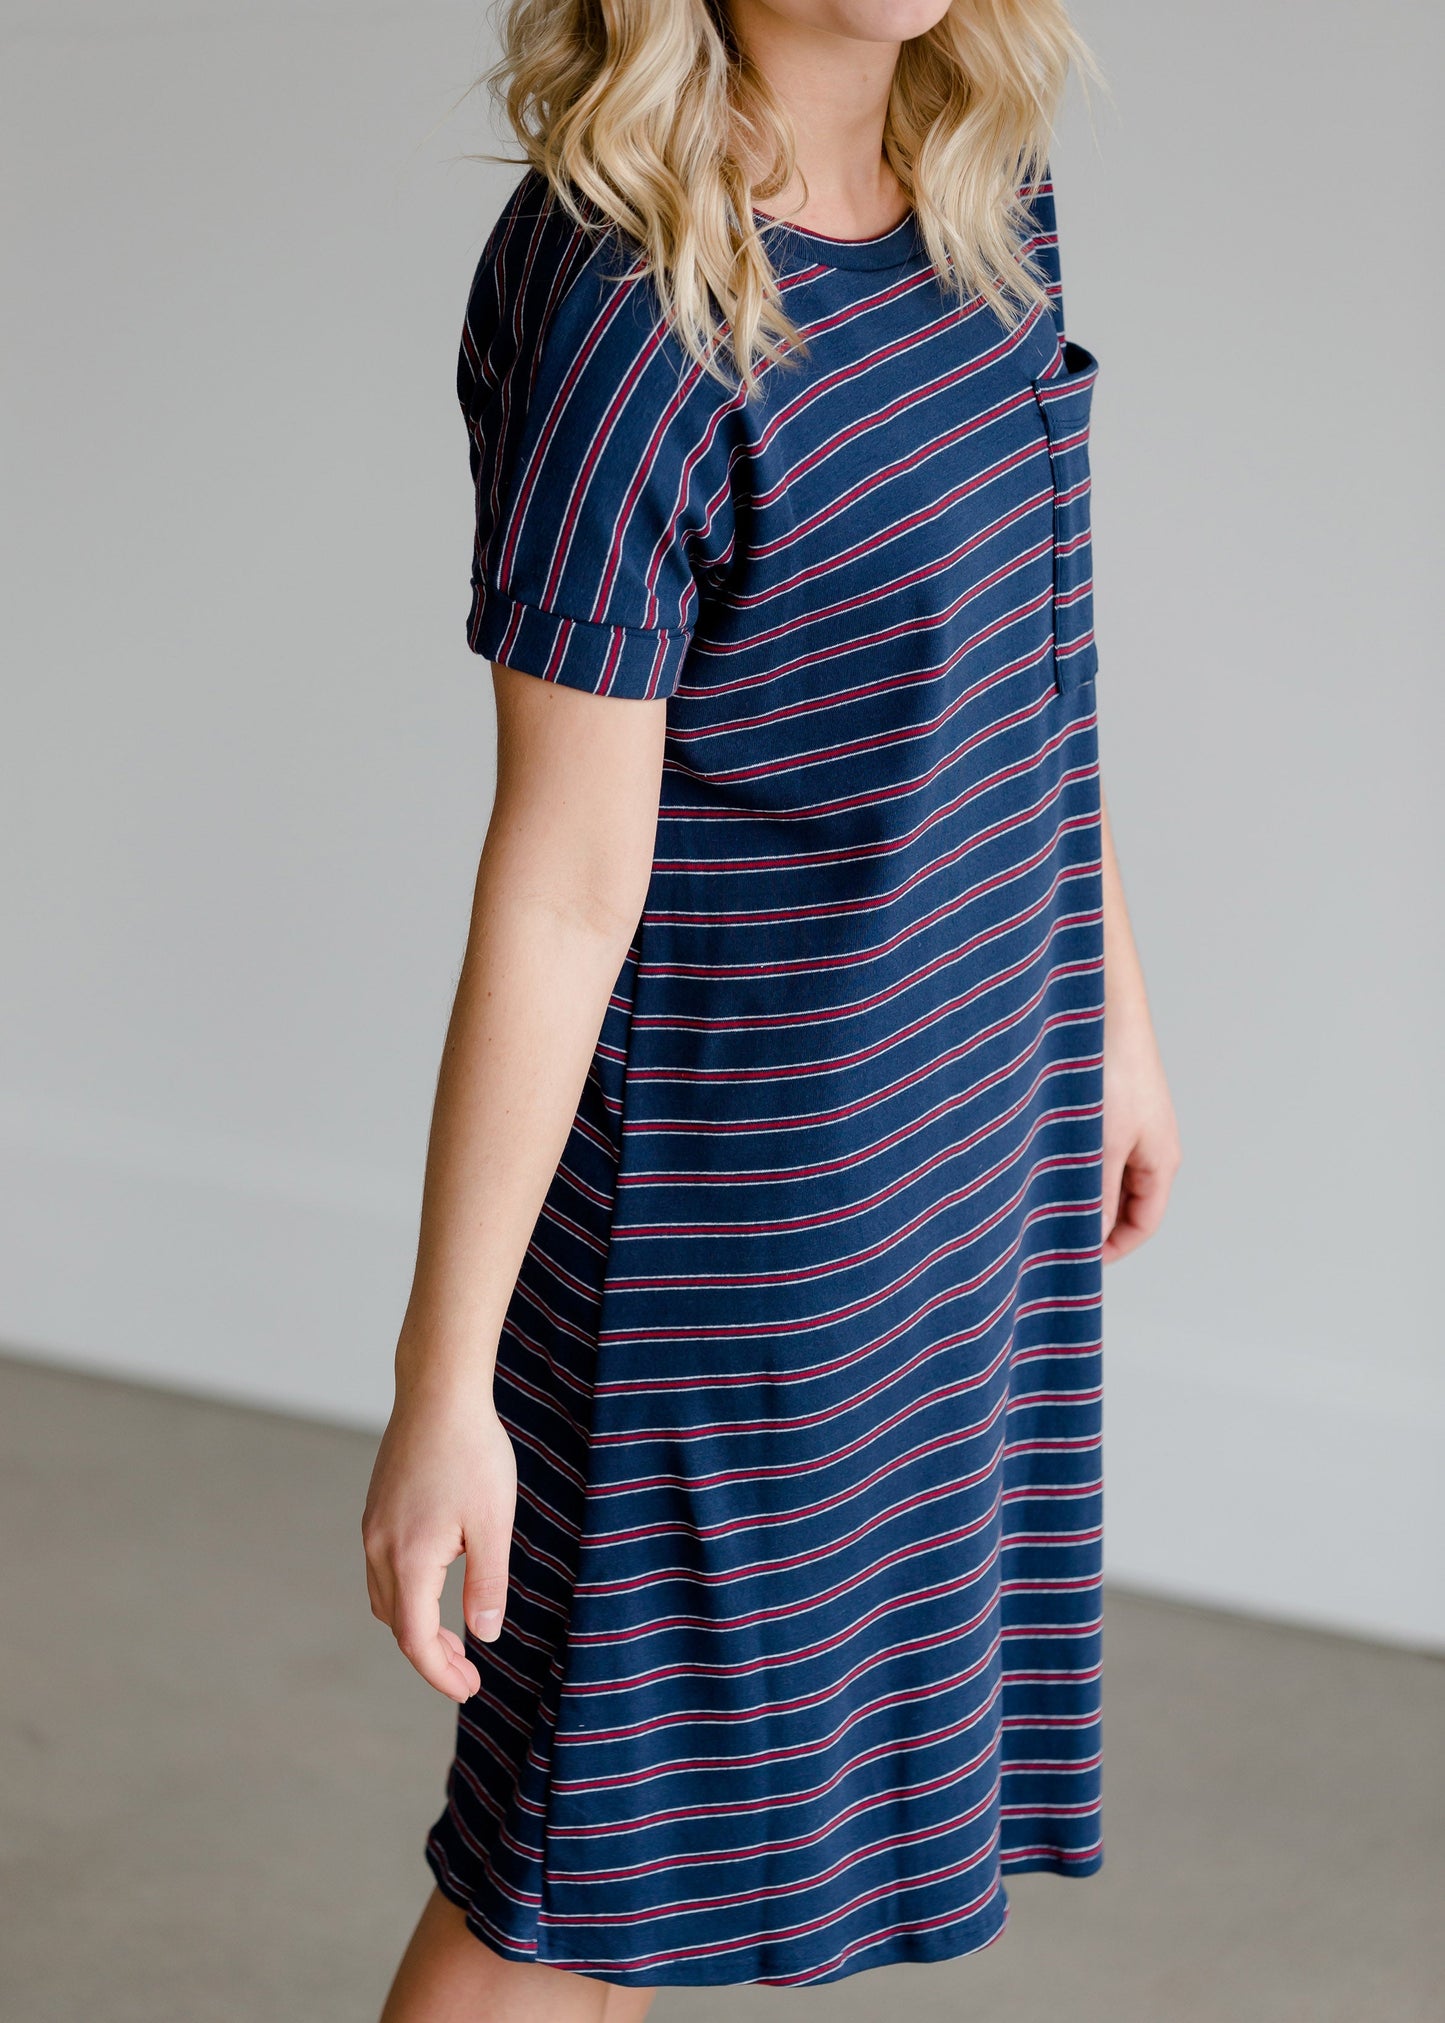 Navy Striped Tee Shirt Dress - FINAL SALE Dresses